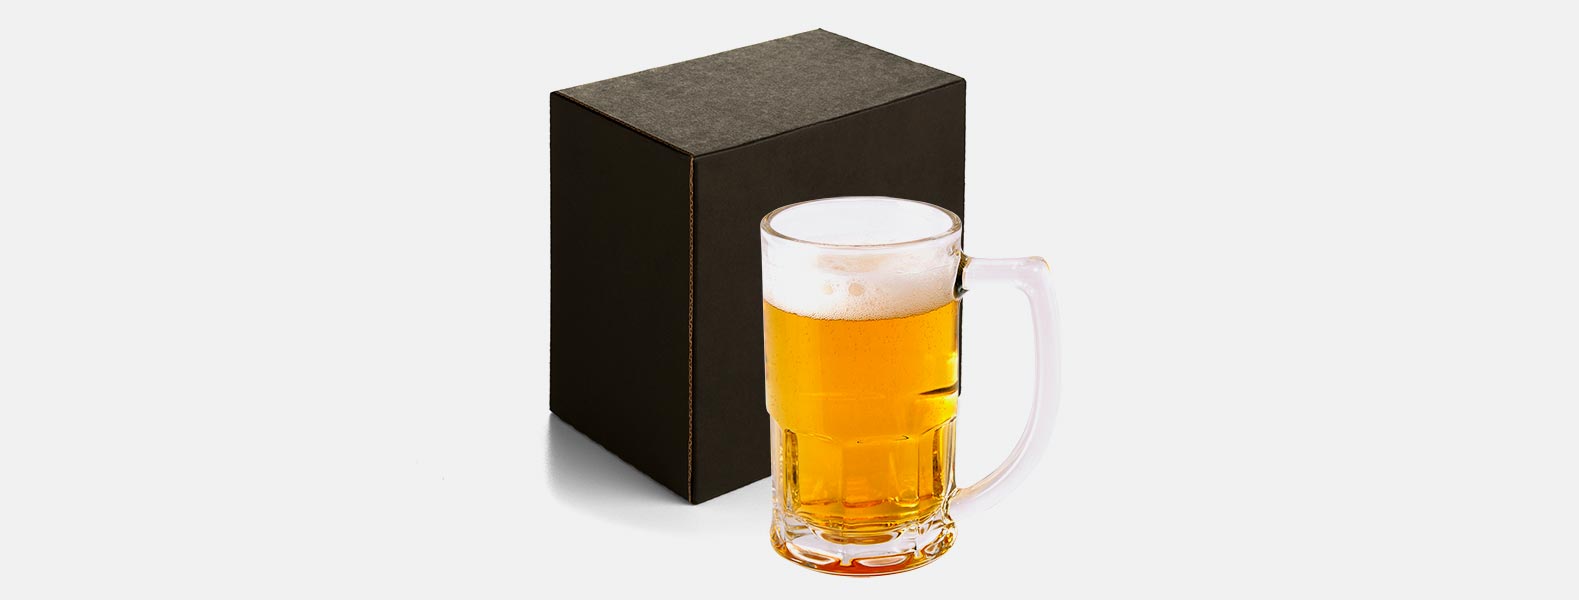 Caneca de Vidro para Chopp ou cerveja. Capacidade: 340 ml Utilidade do Produto: Ideal para brindar os melhores momentos.